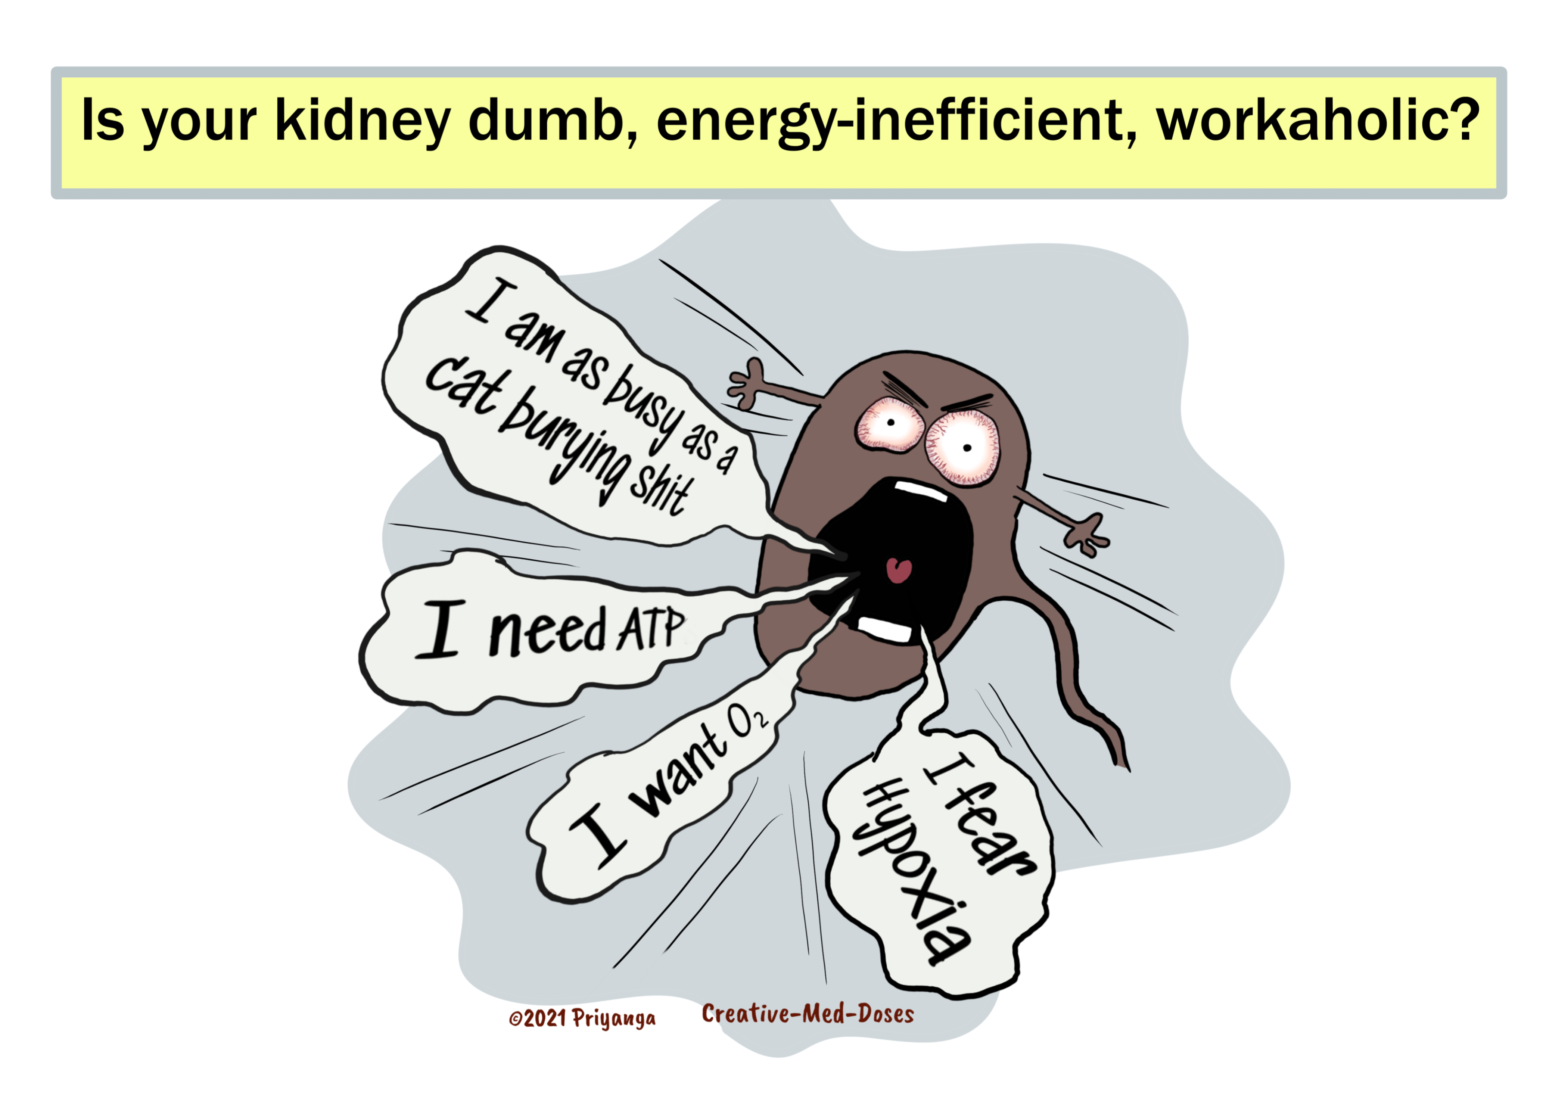 Kidney energetically inefficient waste disposal system